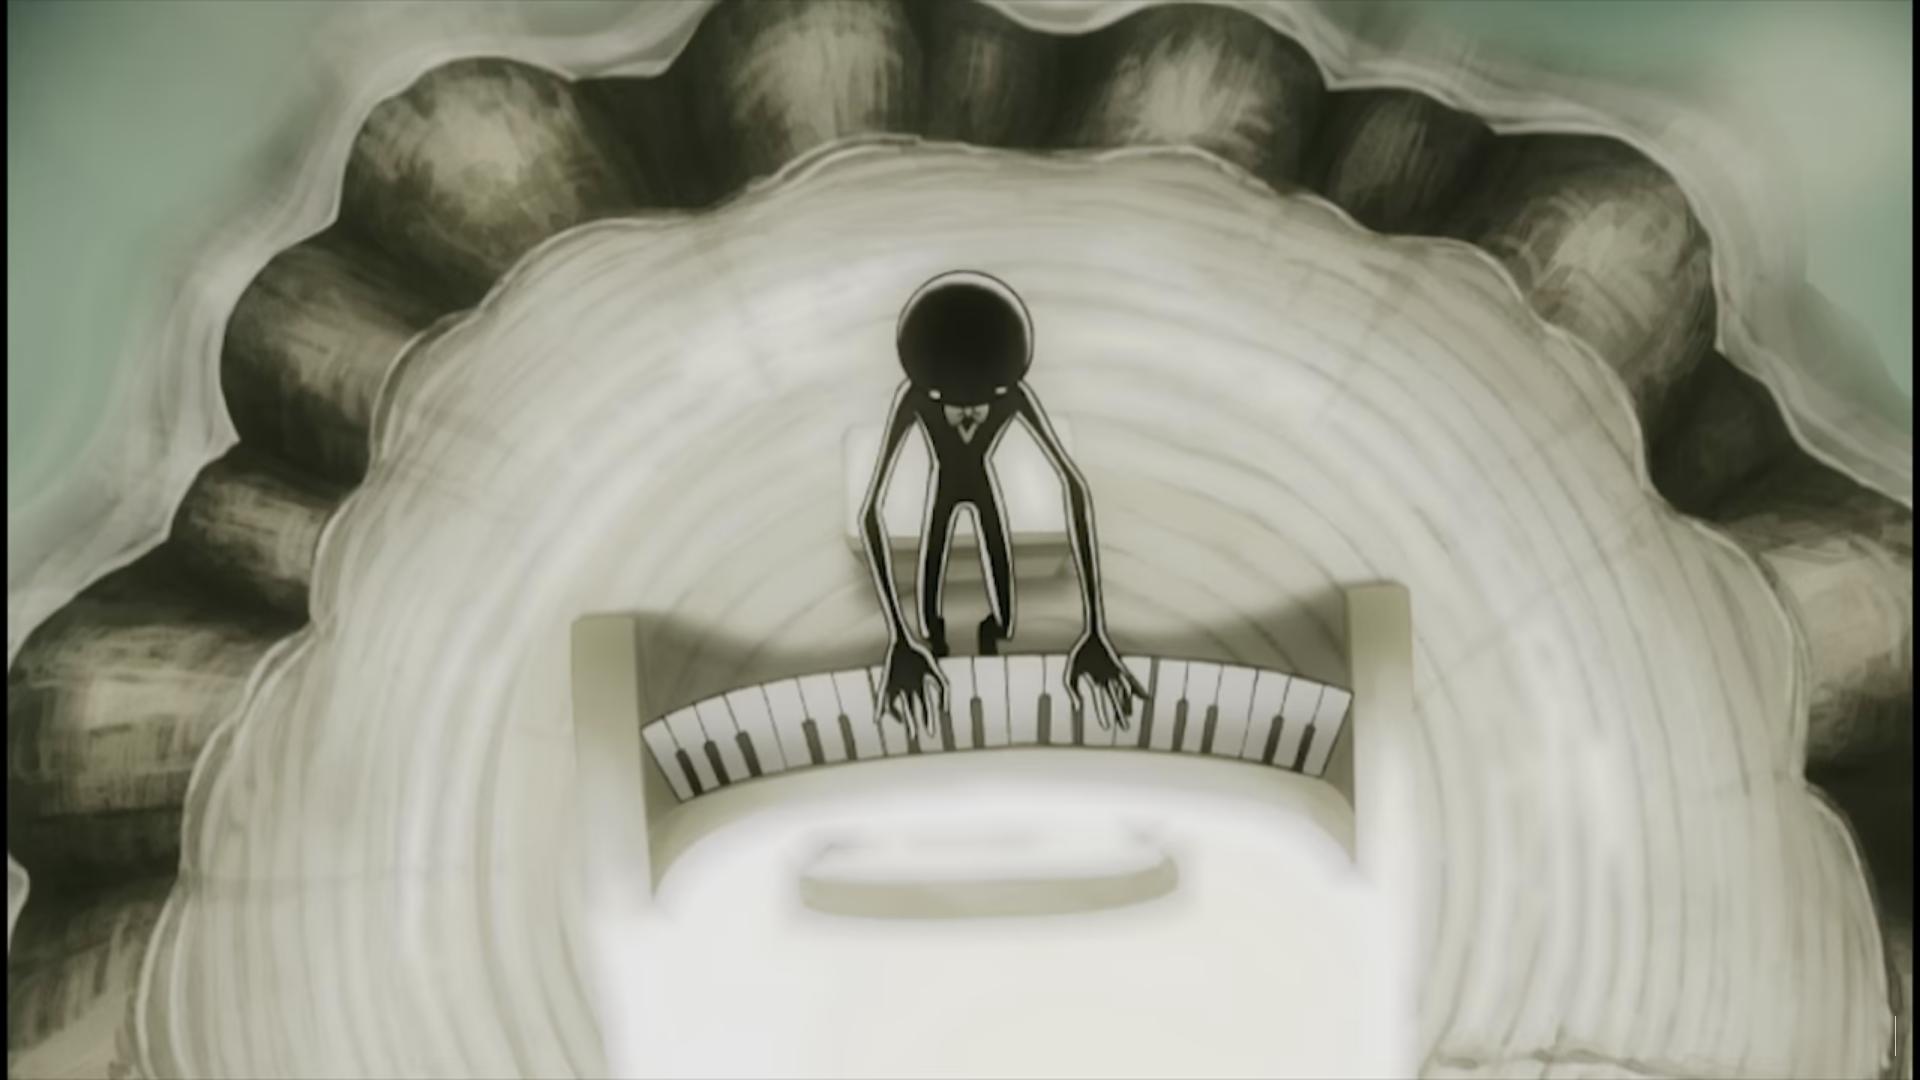 Deemo の楽曲 キミが残した世界で のmvアニメーションがめちゃくちゃ泣ける ネタバレ注意 Moshbox